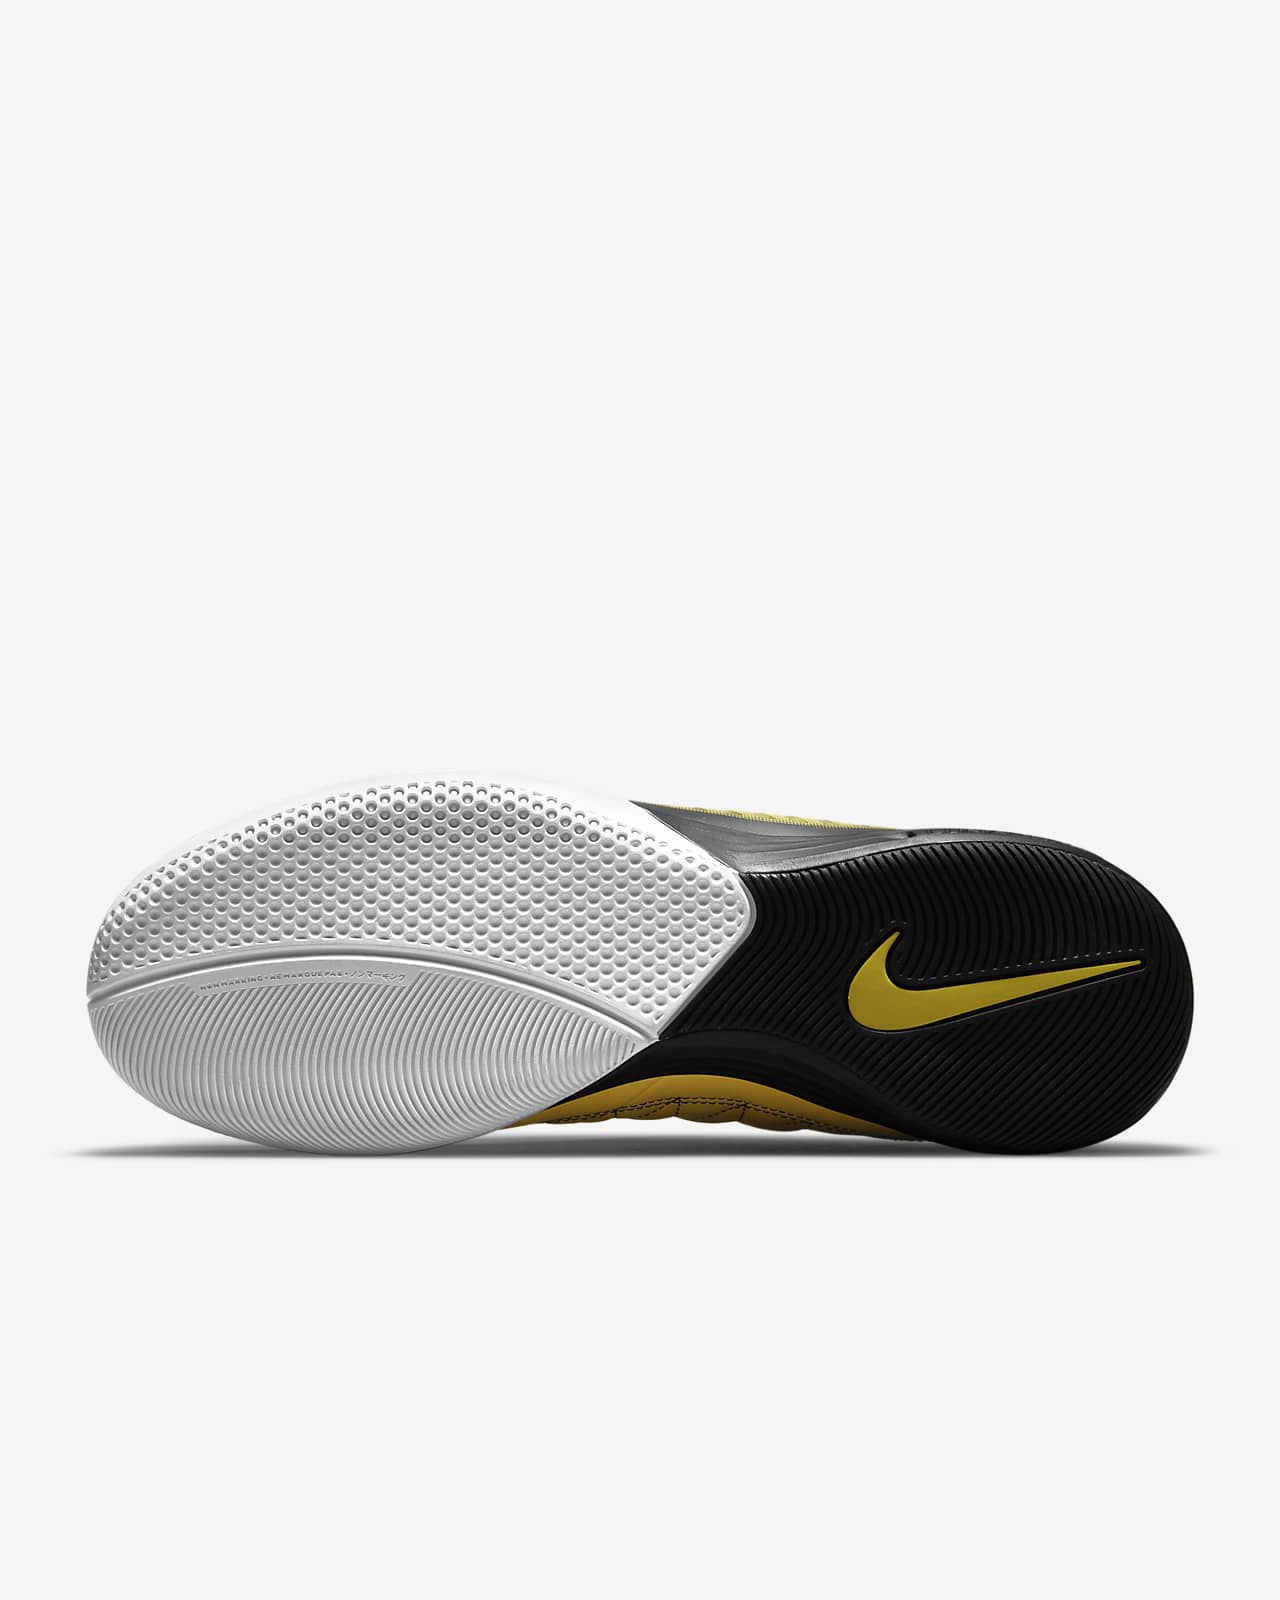 الديتول الاخضر Nike Lunar Gato II IC Indoor/Court Soccer Shoes. Nike.com الديتول الاخضر